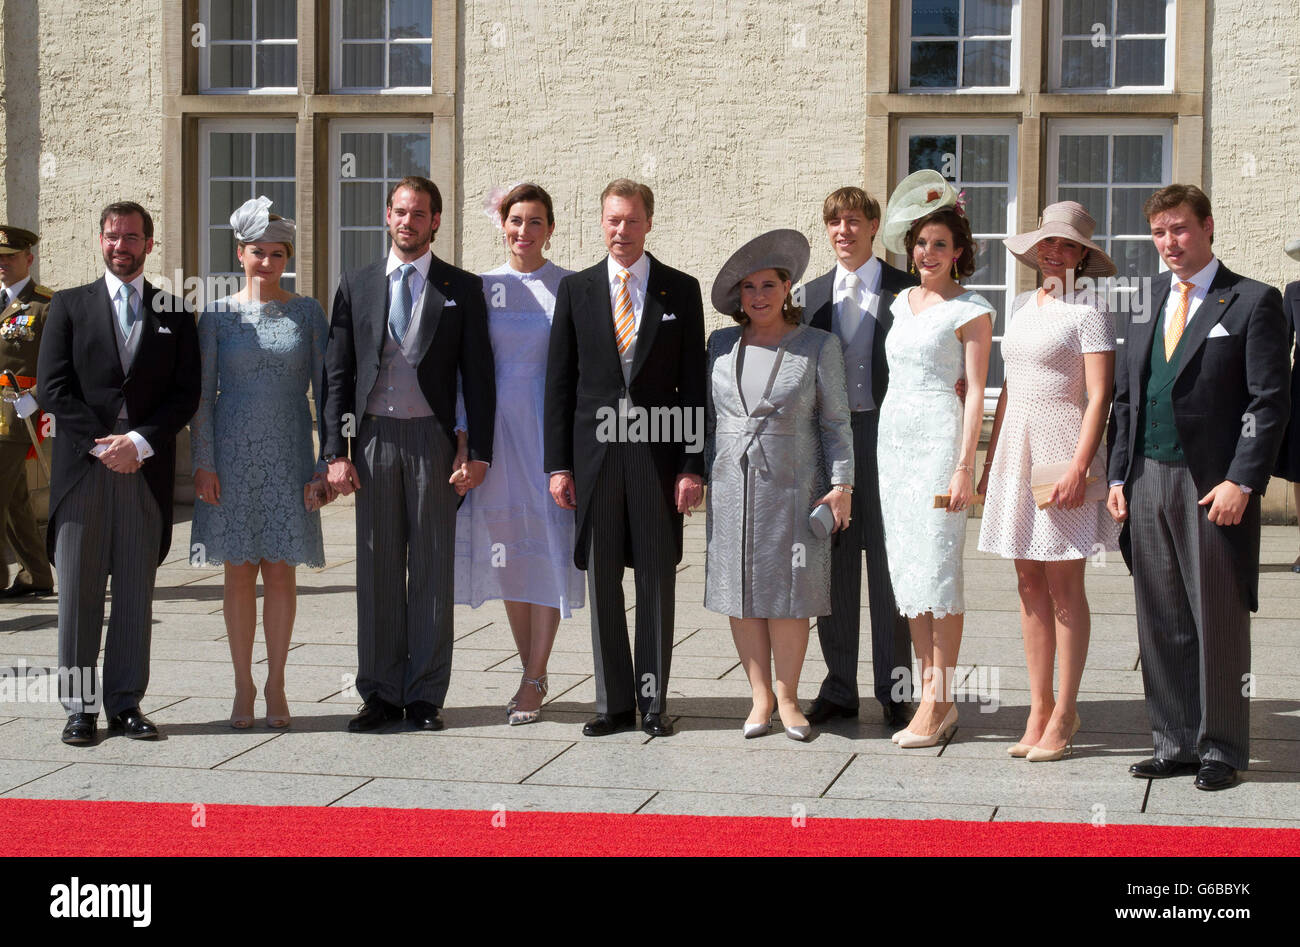 luxembourg-23-06-2016-grand-duke-henri-and-grand-duchess-maria-teresagrand-G6BBYK.jpg